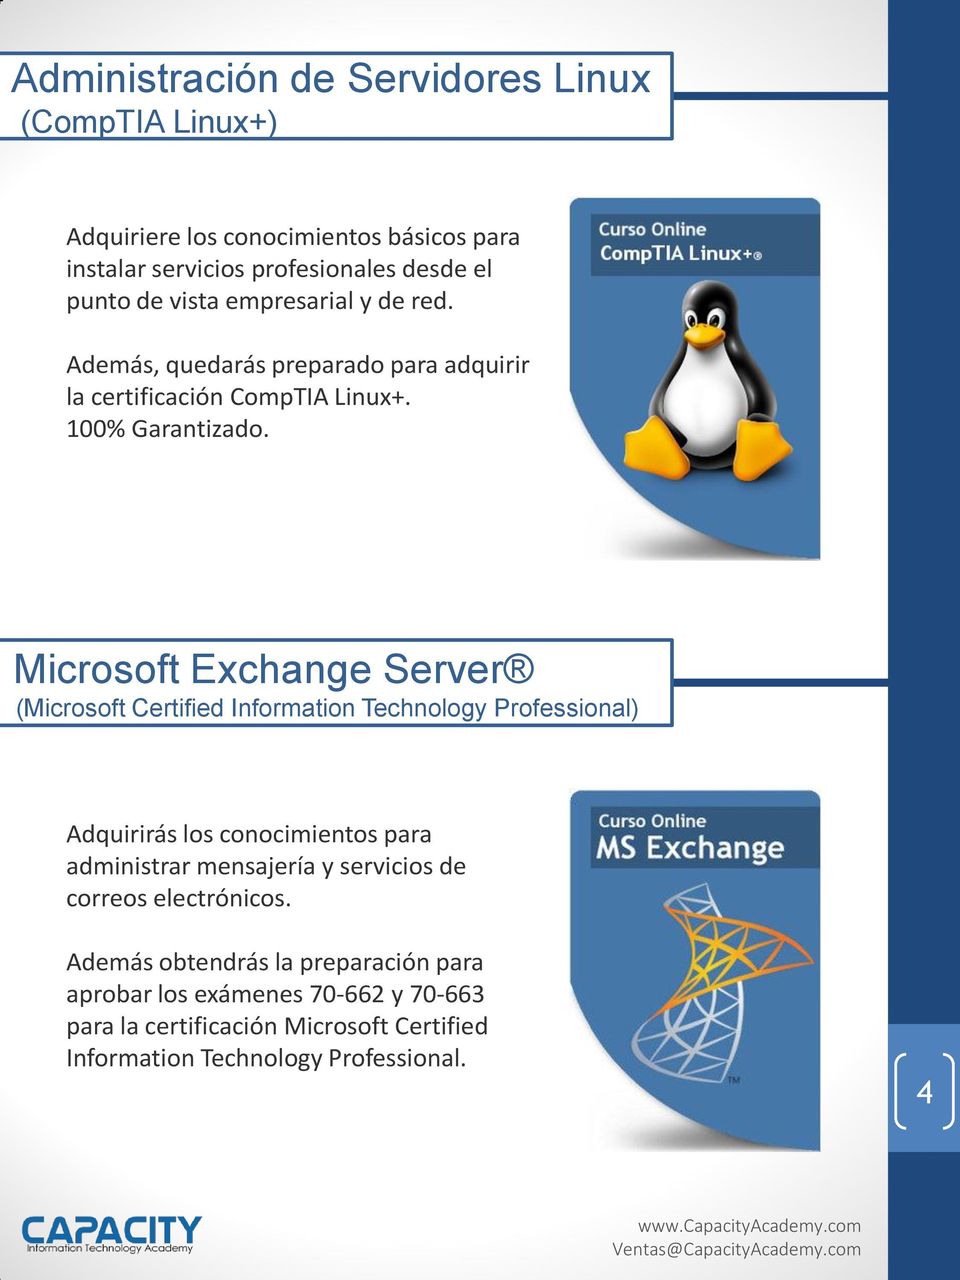 Microsoft Exchange Server (Microsoft Certified Information Technology Professional) Adquirirás los conocimientos para administrar mensajería y